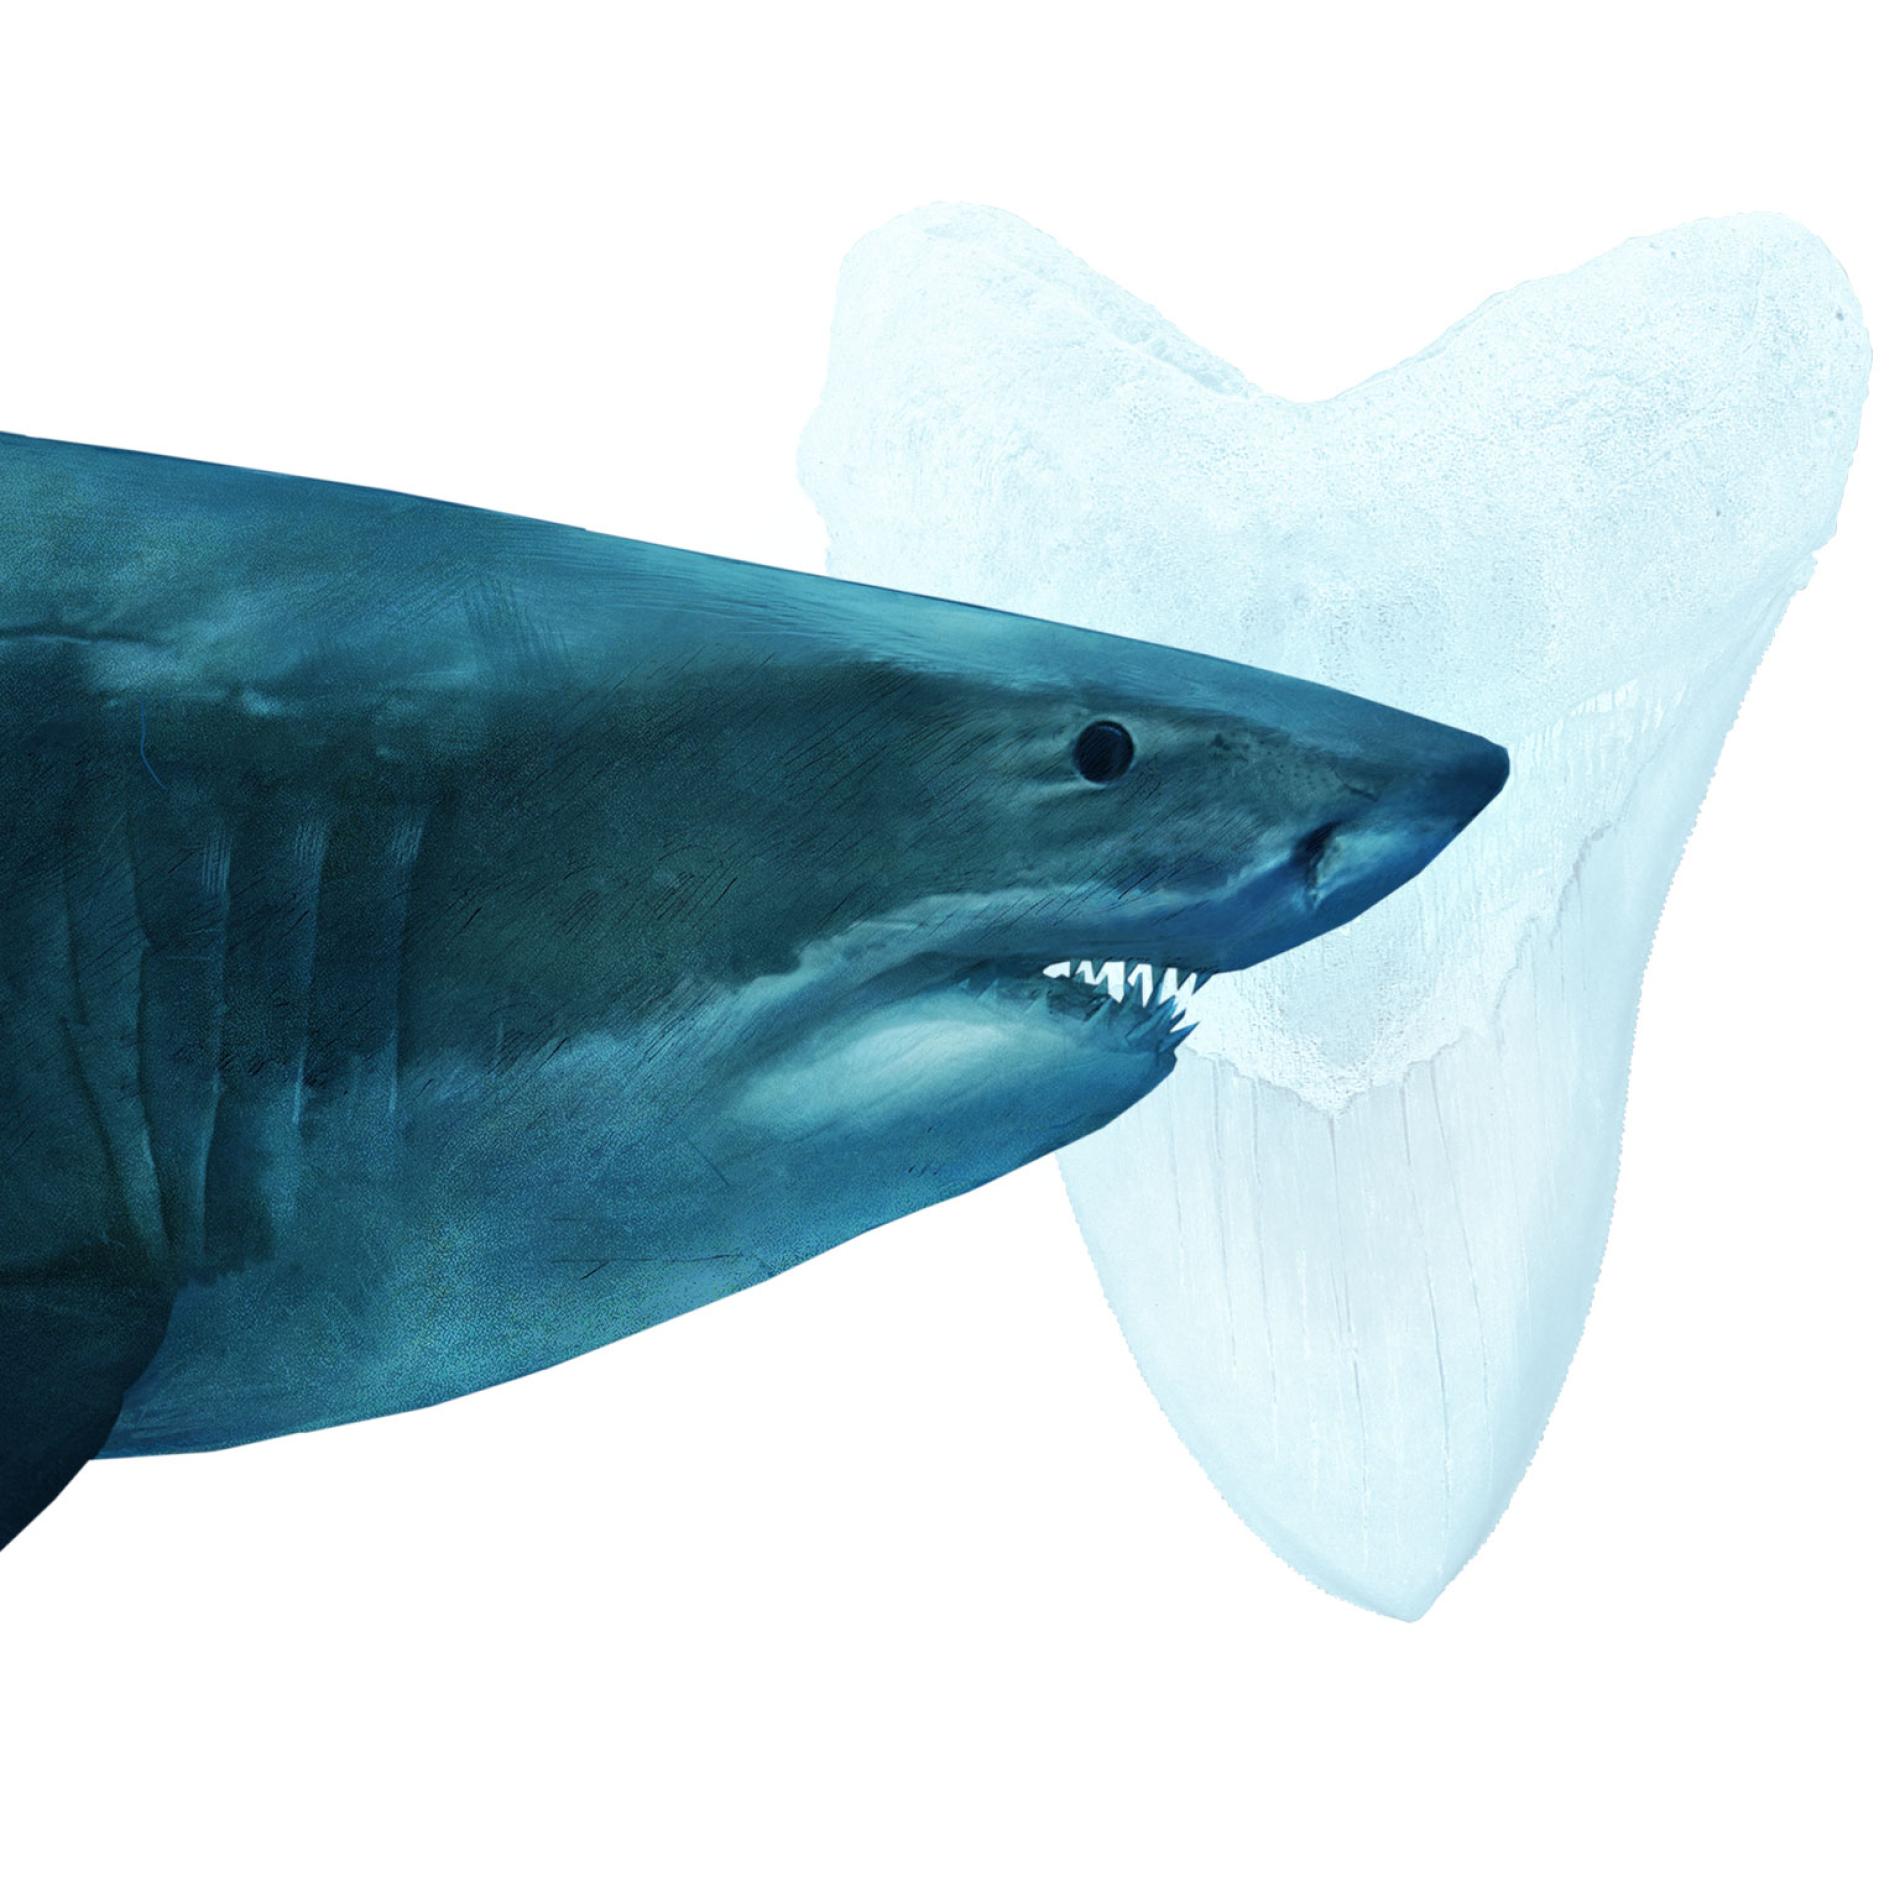 史上最大のサメ メガロドン はなぜ絶滅 新説 ナショナルジオグラフィック日本版サイト